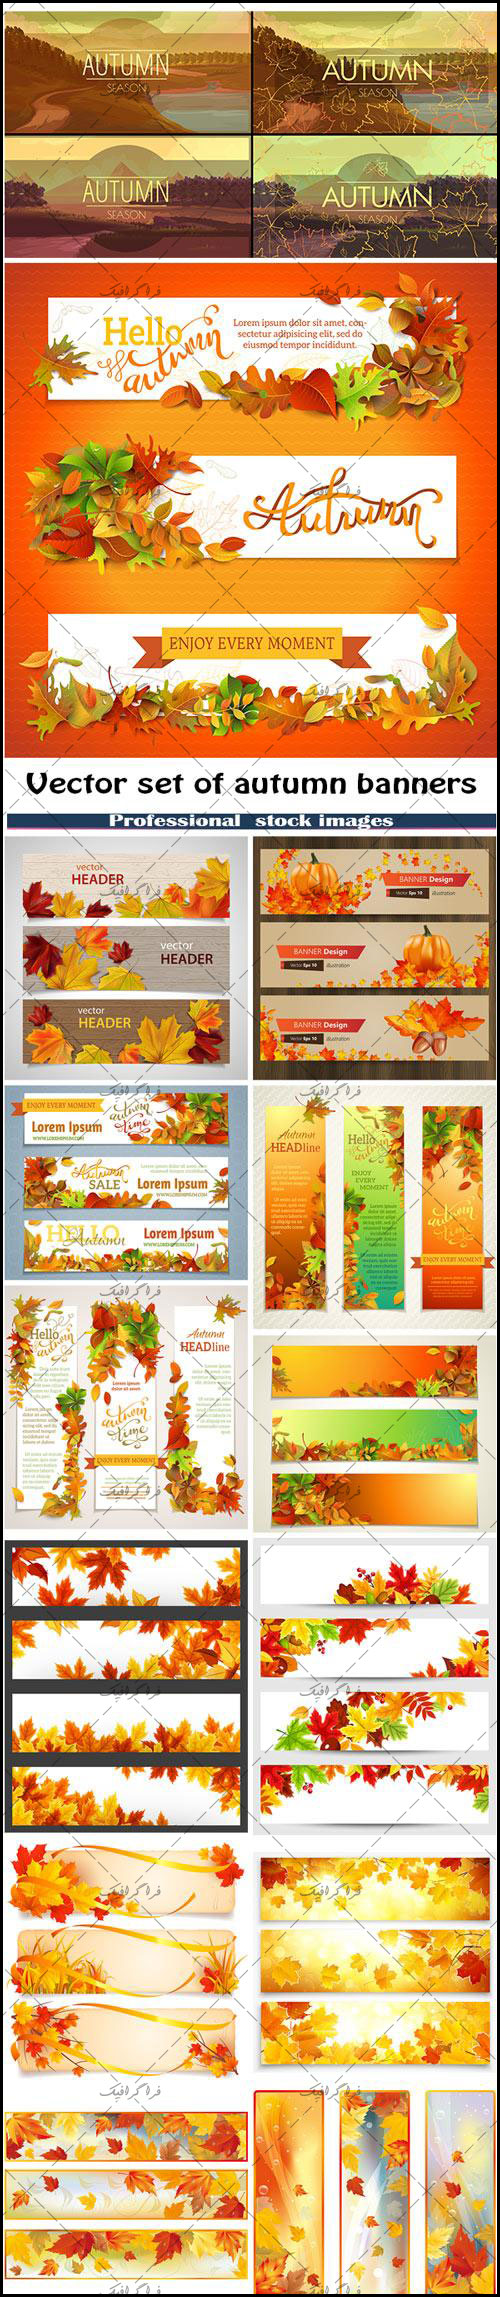 دانلود وکتور بنر های فصل پاییز - Autumn Banners